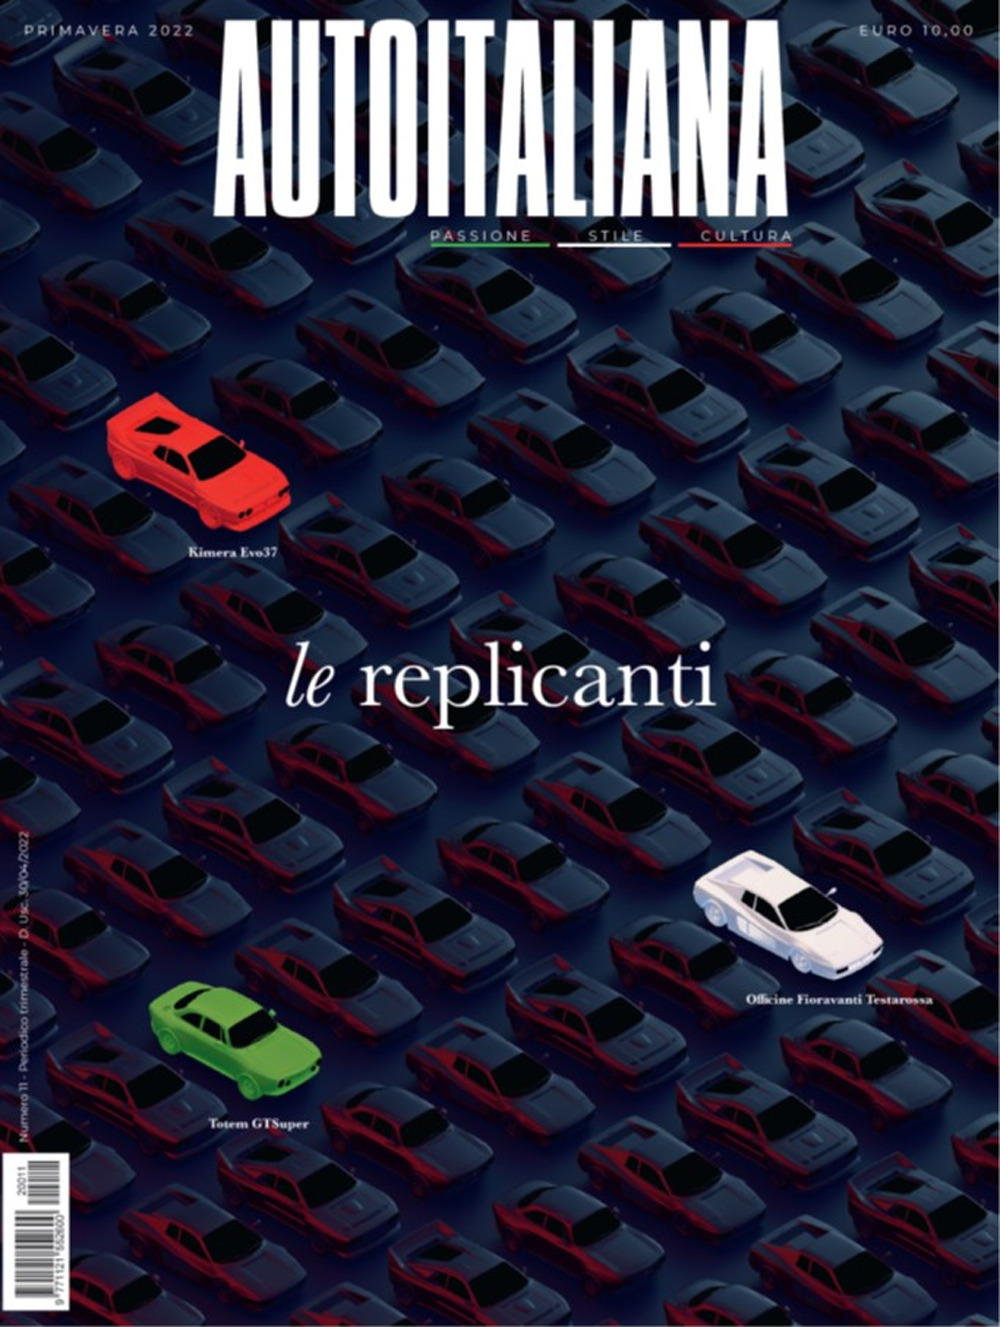 Auto italiana. Passione stile cultura. Vol. 11: Le replicanti